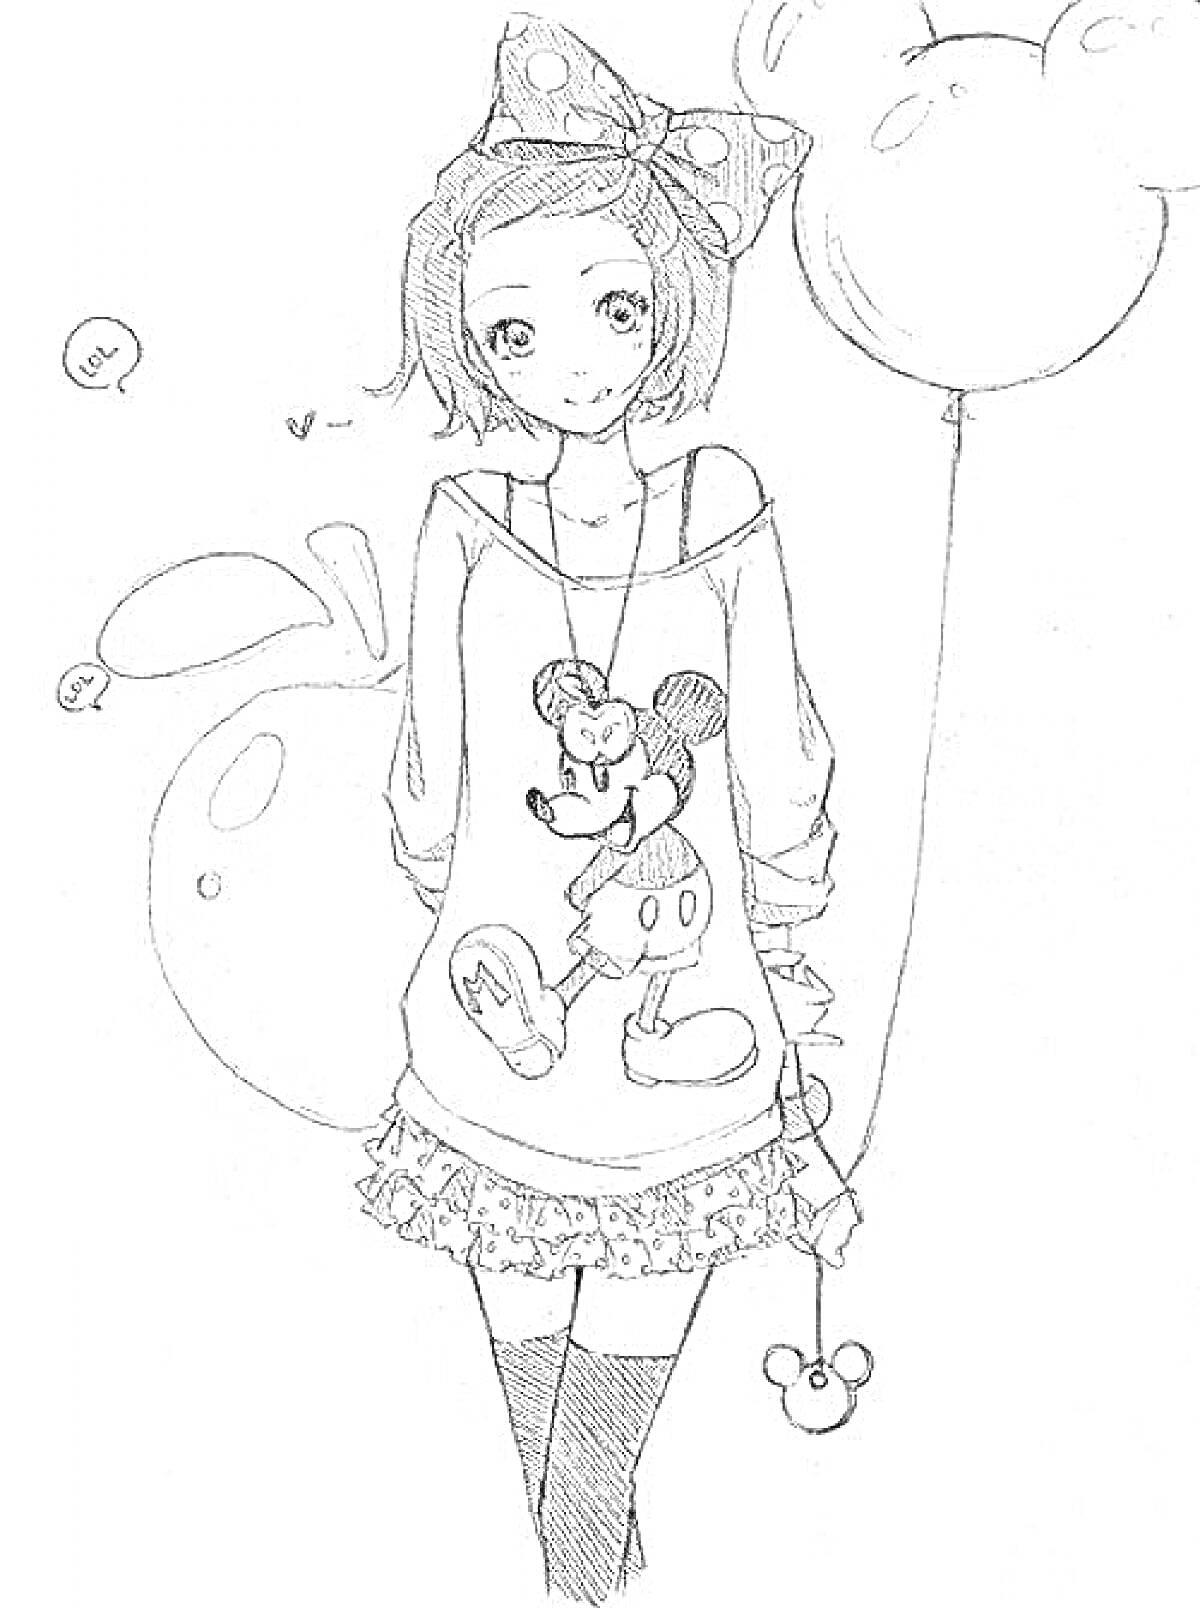 Раскраска Девочка в стиле аниме с бантом, воздушными шарами и свитером с Микки Маусом